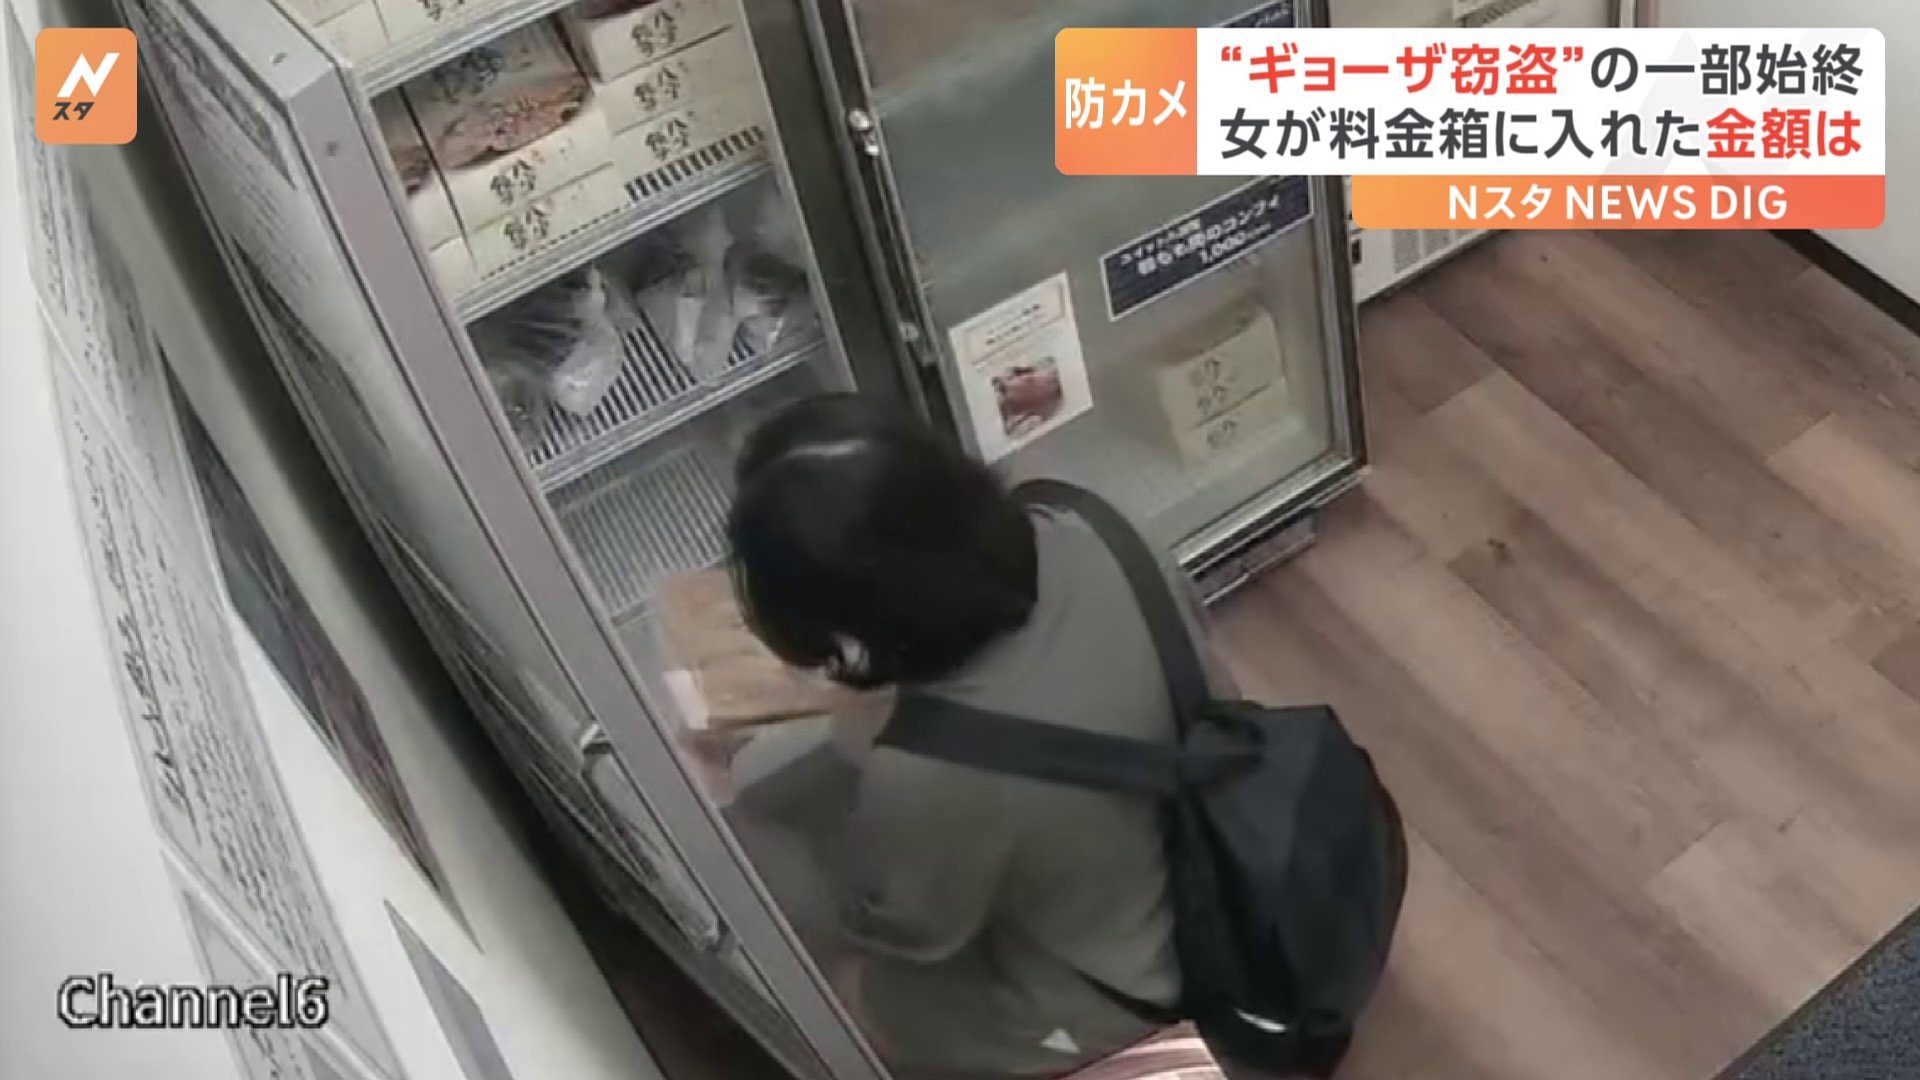 Re: [新聞] 懷疑偷4000元的冷凍水餃,台灣女被逮捕